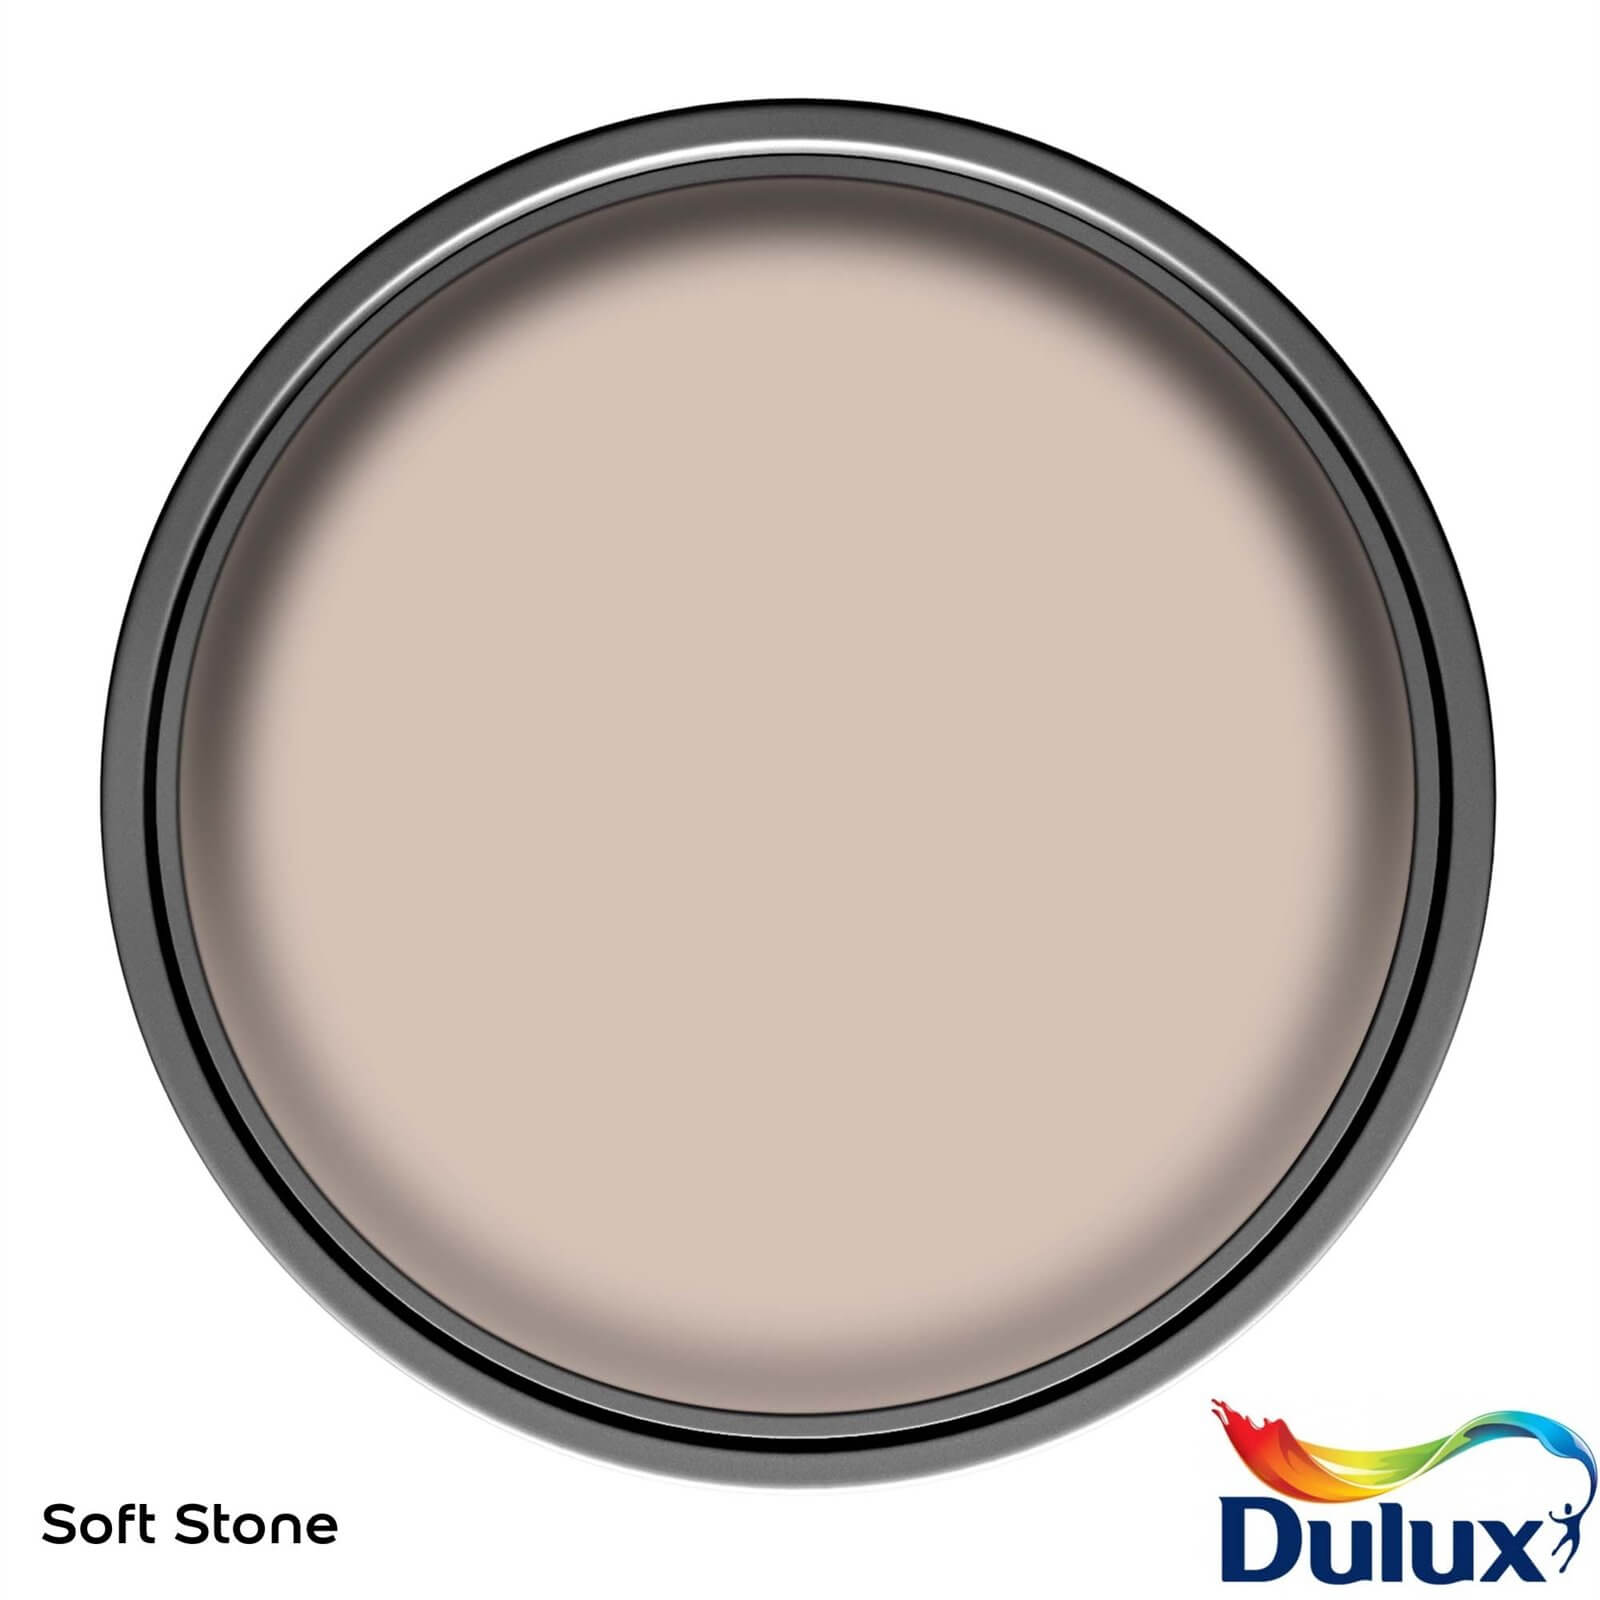 Dulux Once Soft Stone - Matt Emulsion Paint - 5L